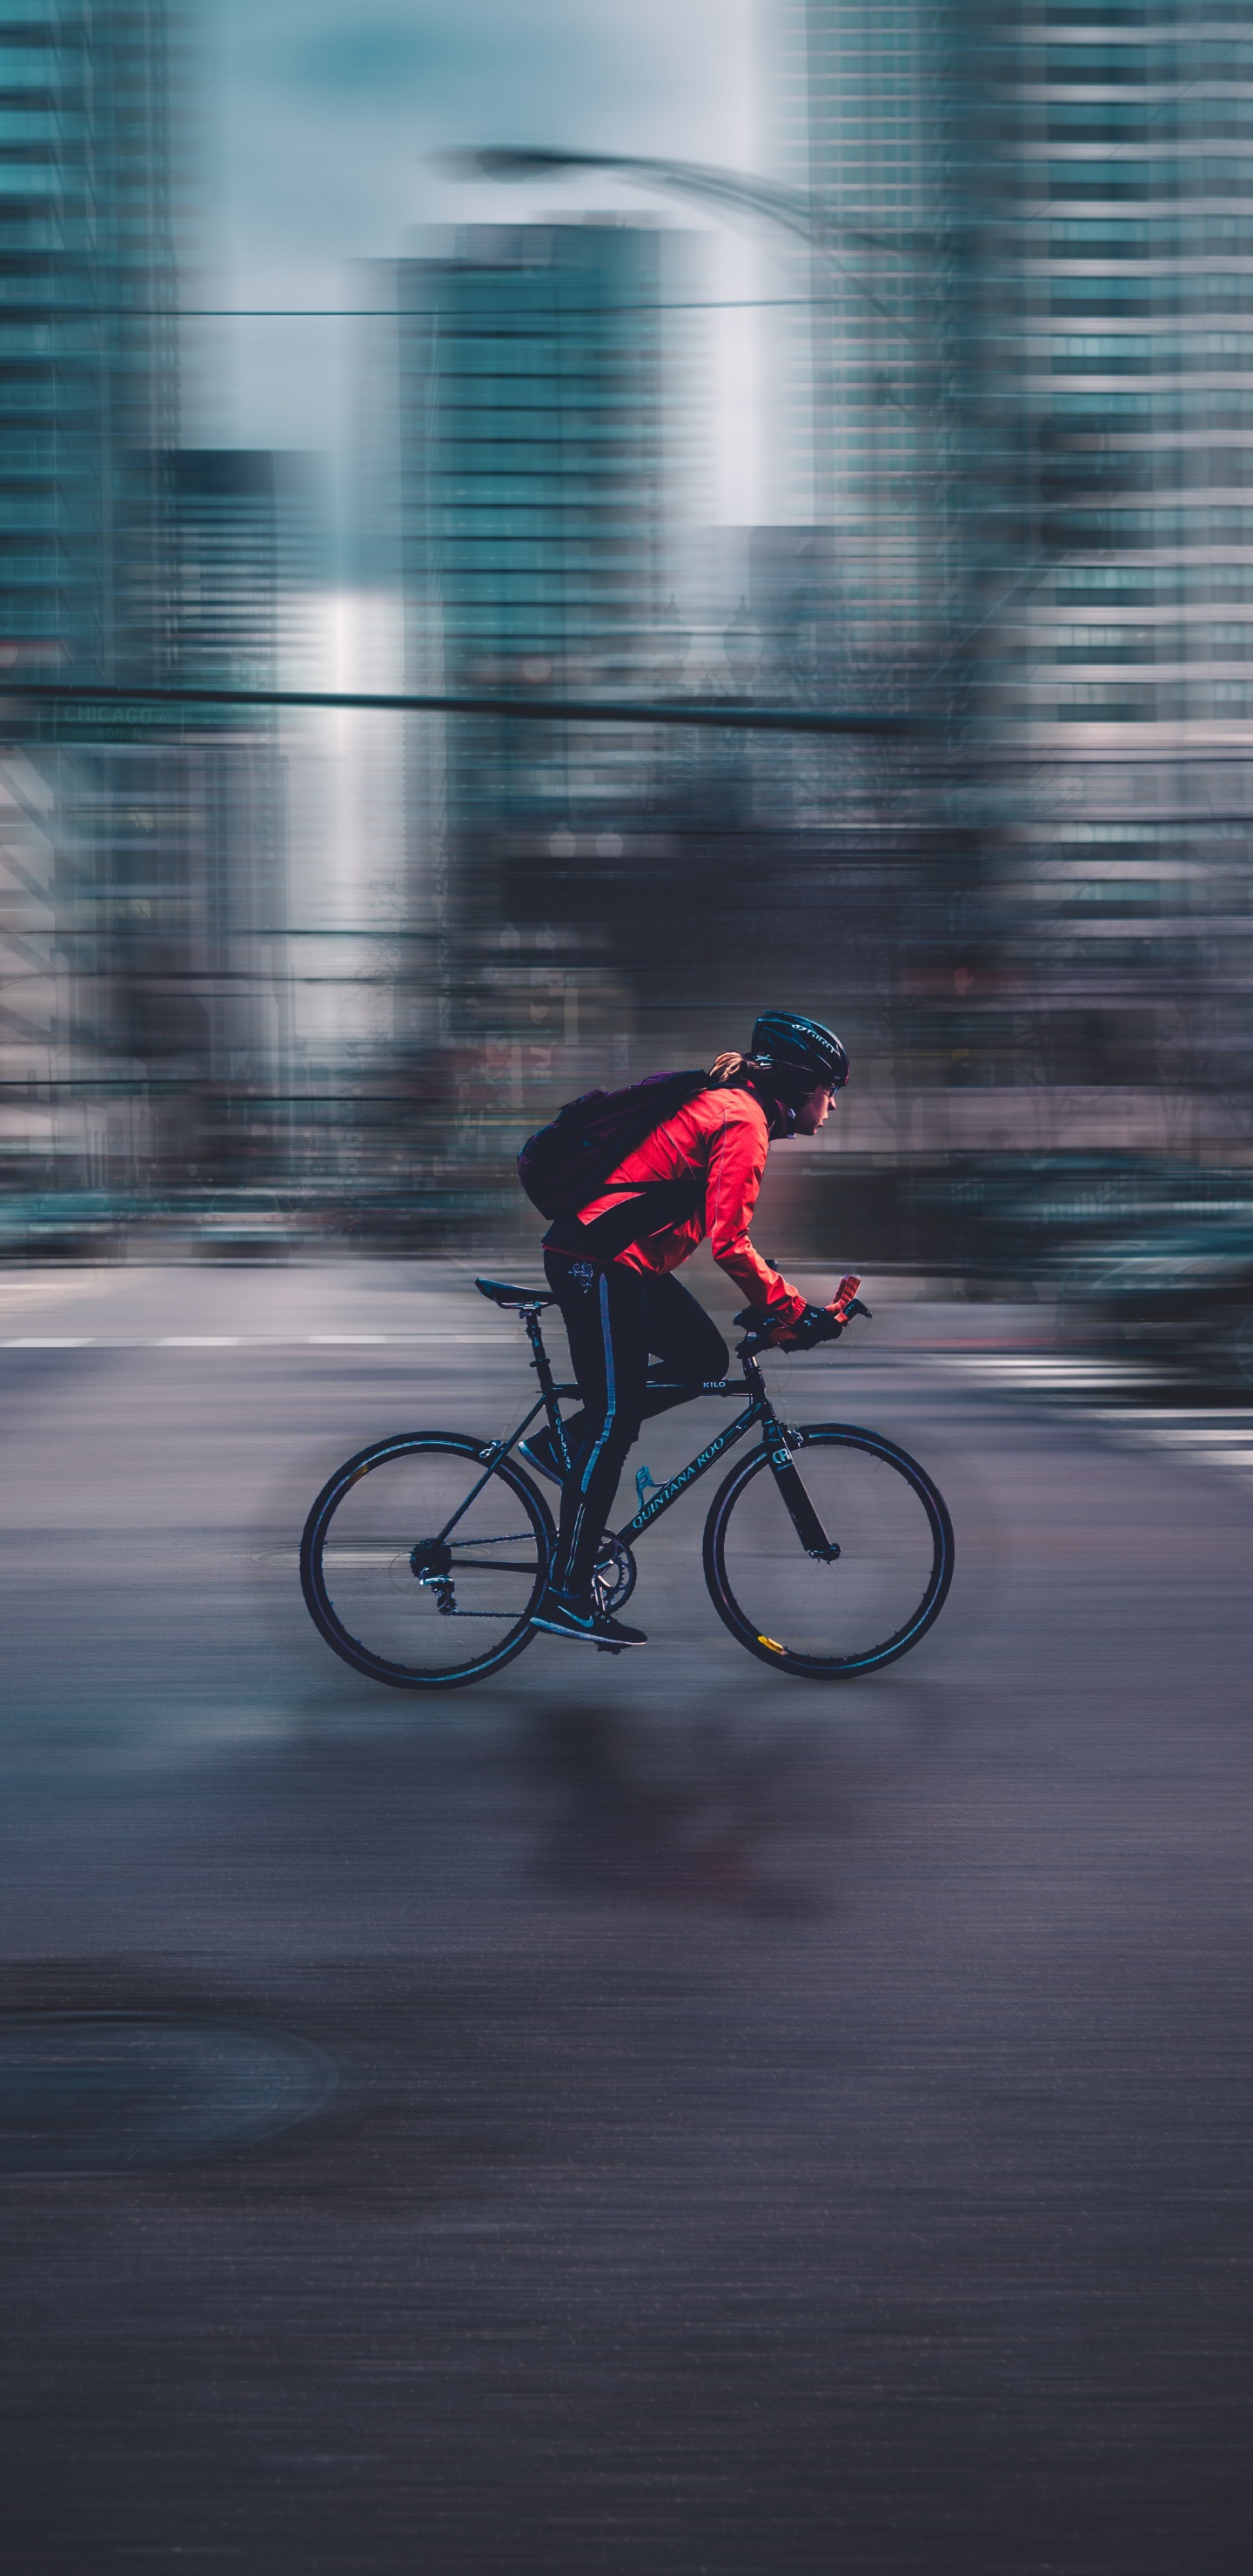 Hombre de Chaqueta Roja Montando Bicicleta en la Carretera Durante el Día. Wallpaper in 1440x2960 Resolution